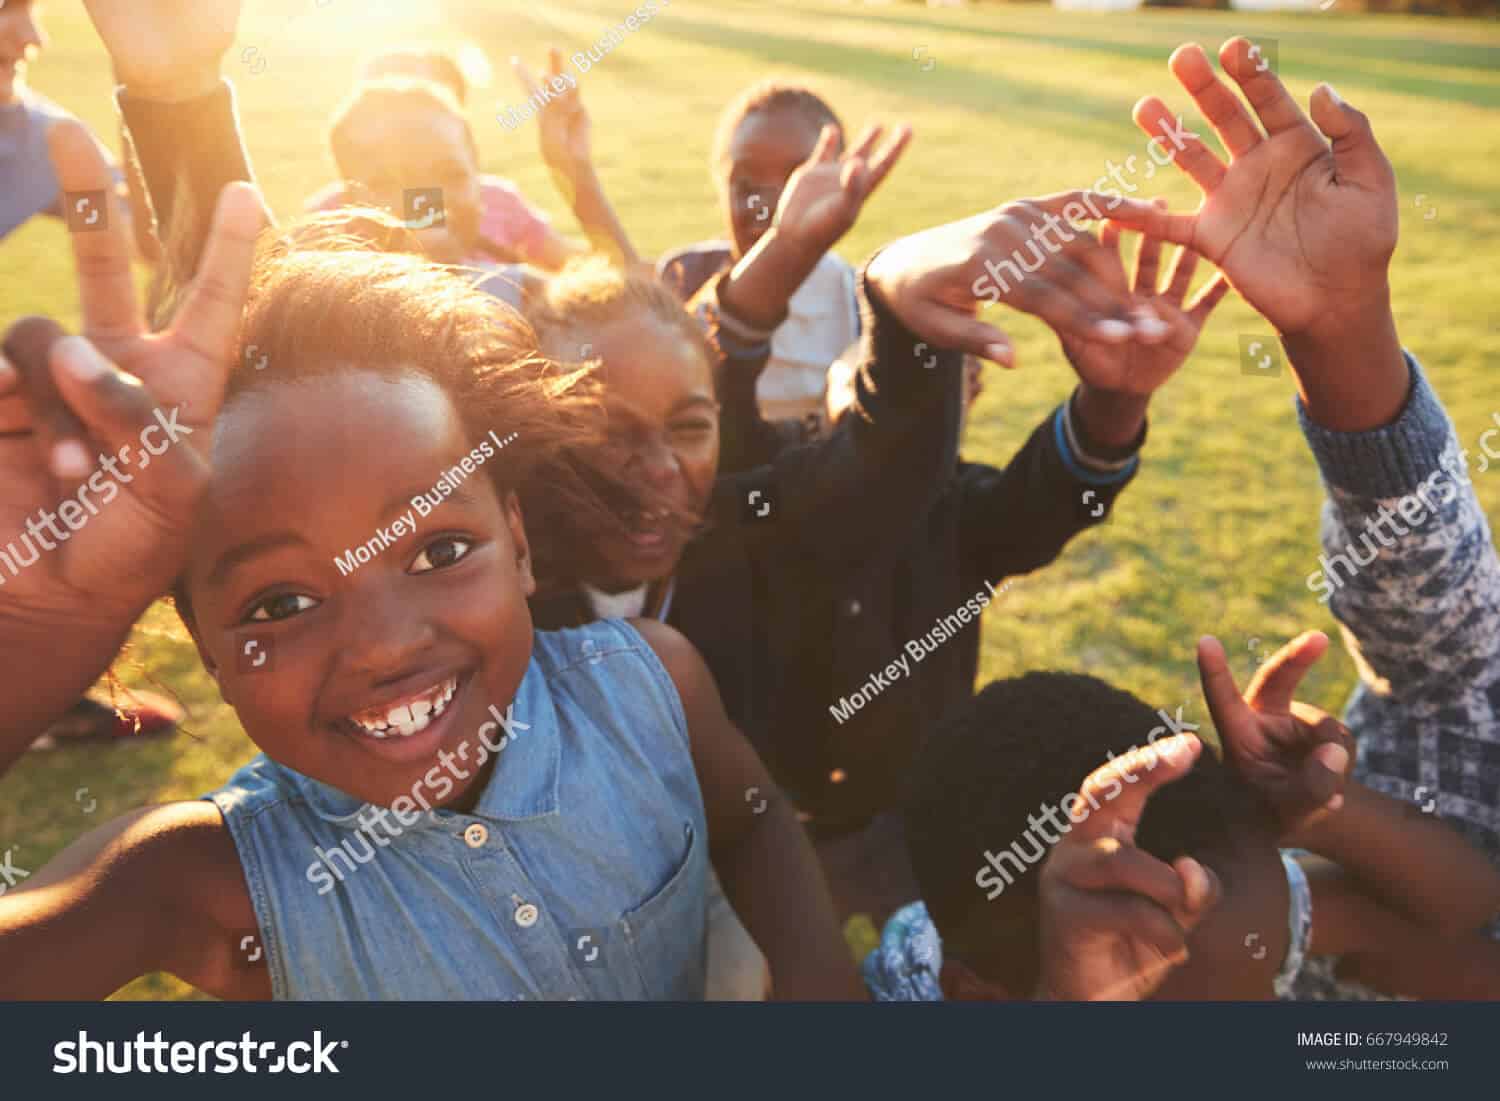 250 ngàn hình ảnh em bé Châu Phi chất lượng cao trên Shutterstock